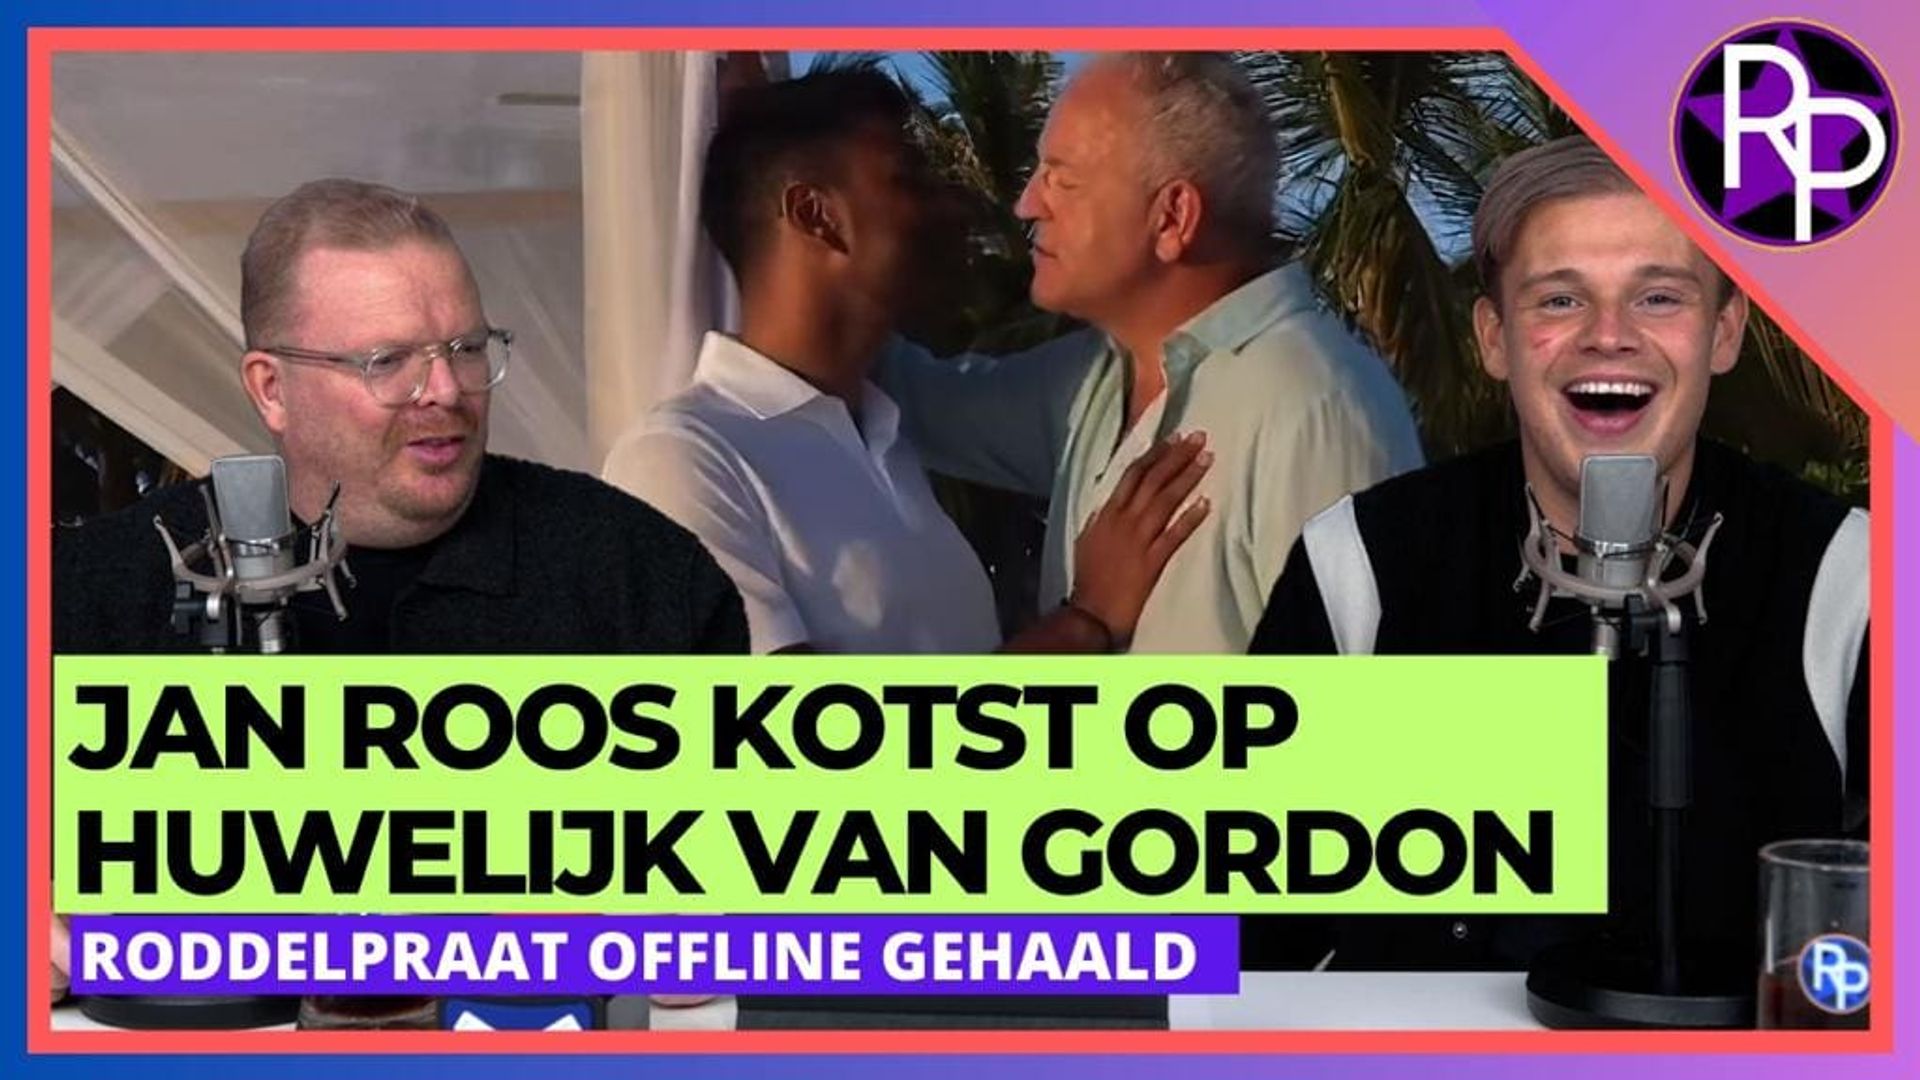 RoddelPraat offline gehaald door de Volkskrant & Jan Roos kotst op huwelijk Gordon